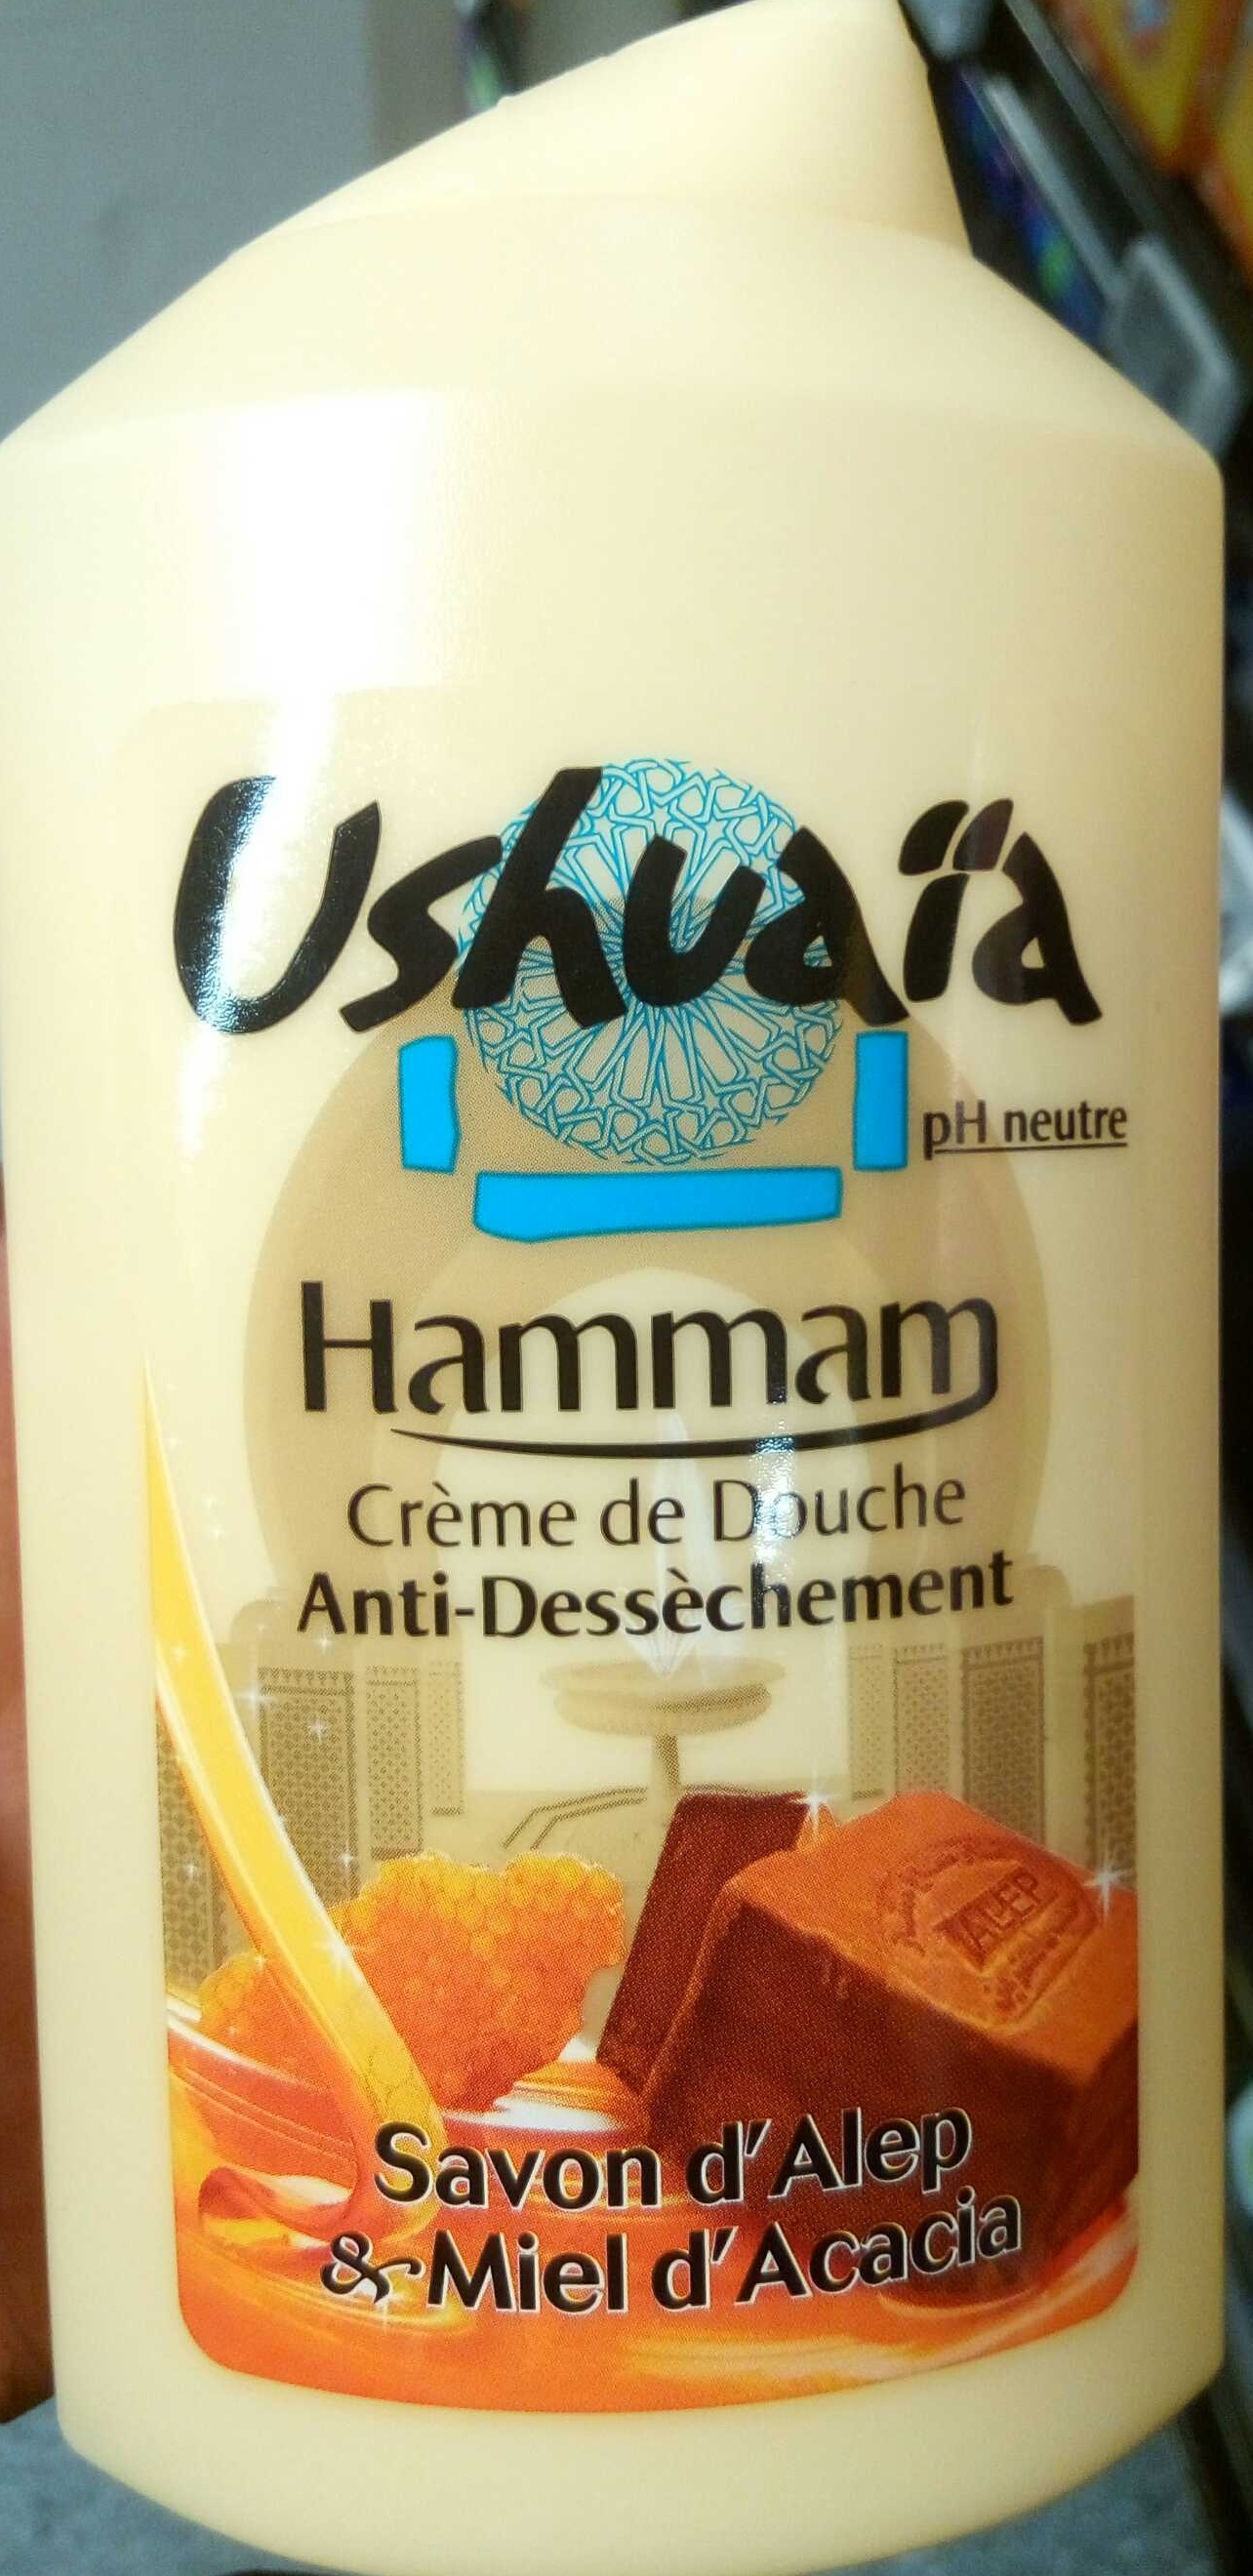 Crème de Douche anti-dessèchement Hammam Savon d'Alep & Miel d'Acacia - Produkt - fr